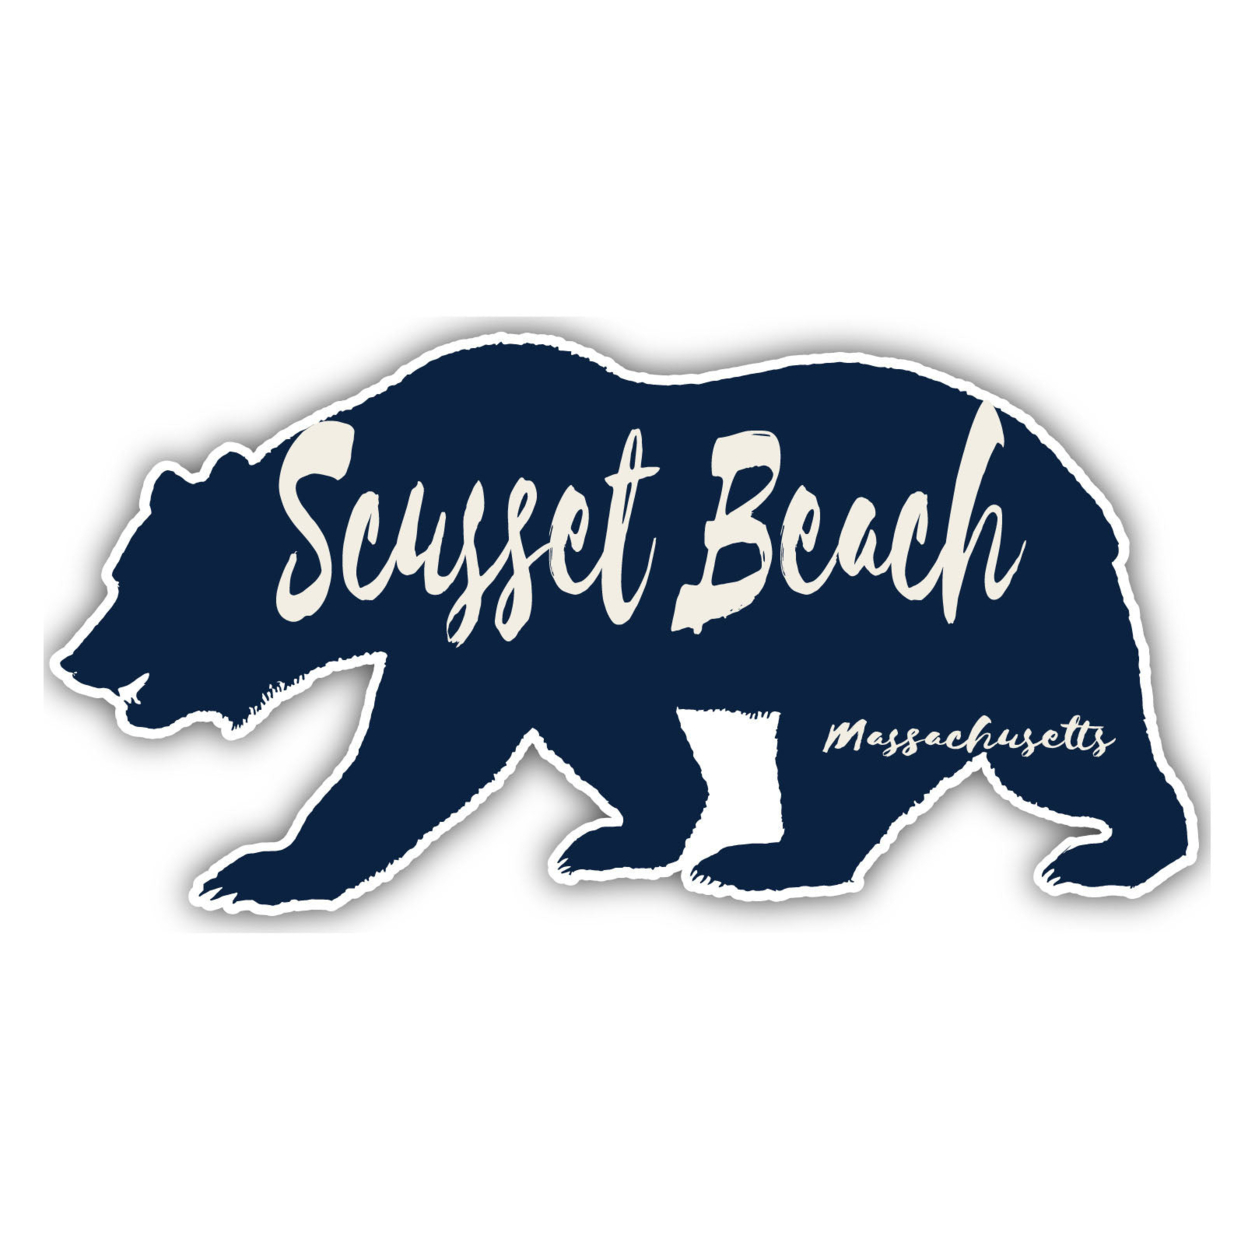 Scusset Beach Massachusetts Souvenir Decorative Stickers (Choose Theme And Size) - Single Unit, 2-Inch, Bear